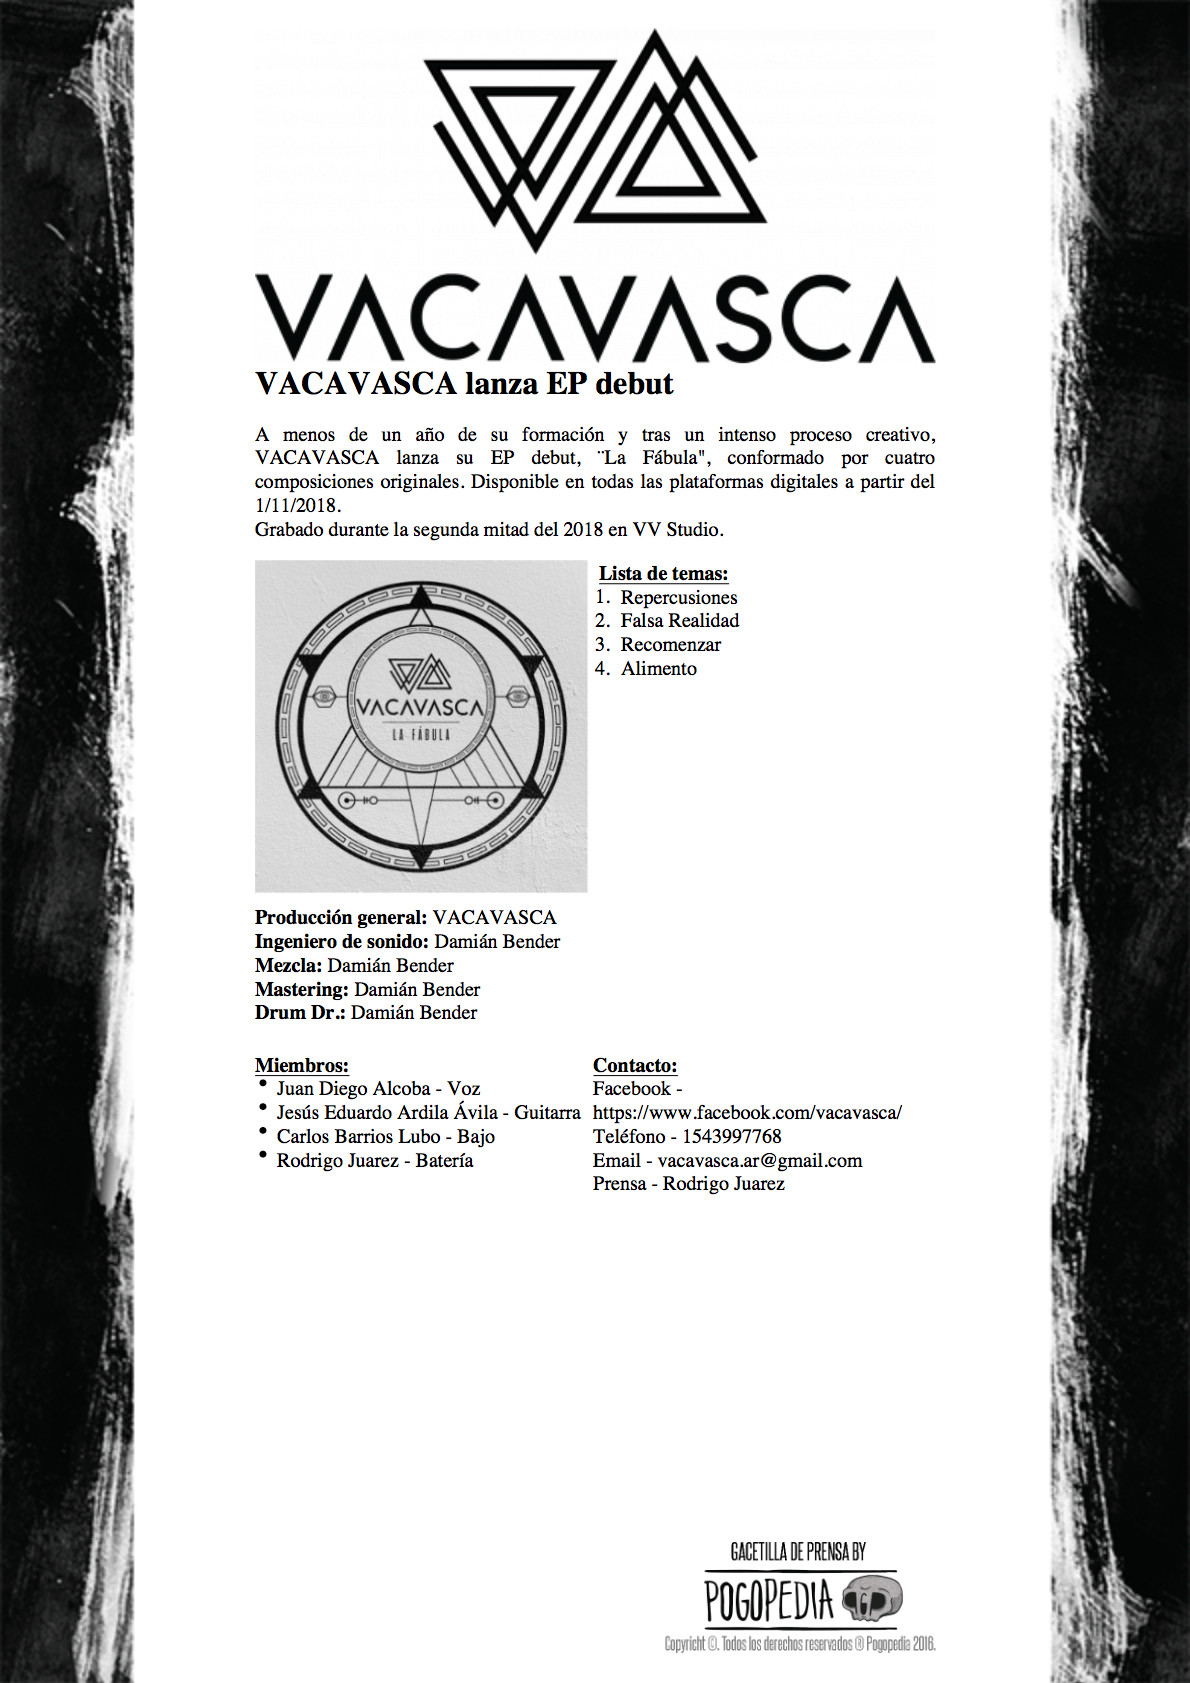 VACAVASCA lanza EP debut